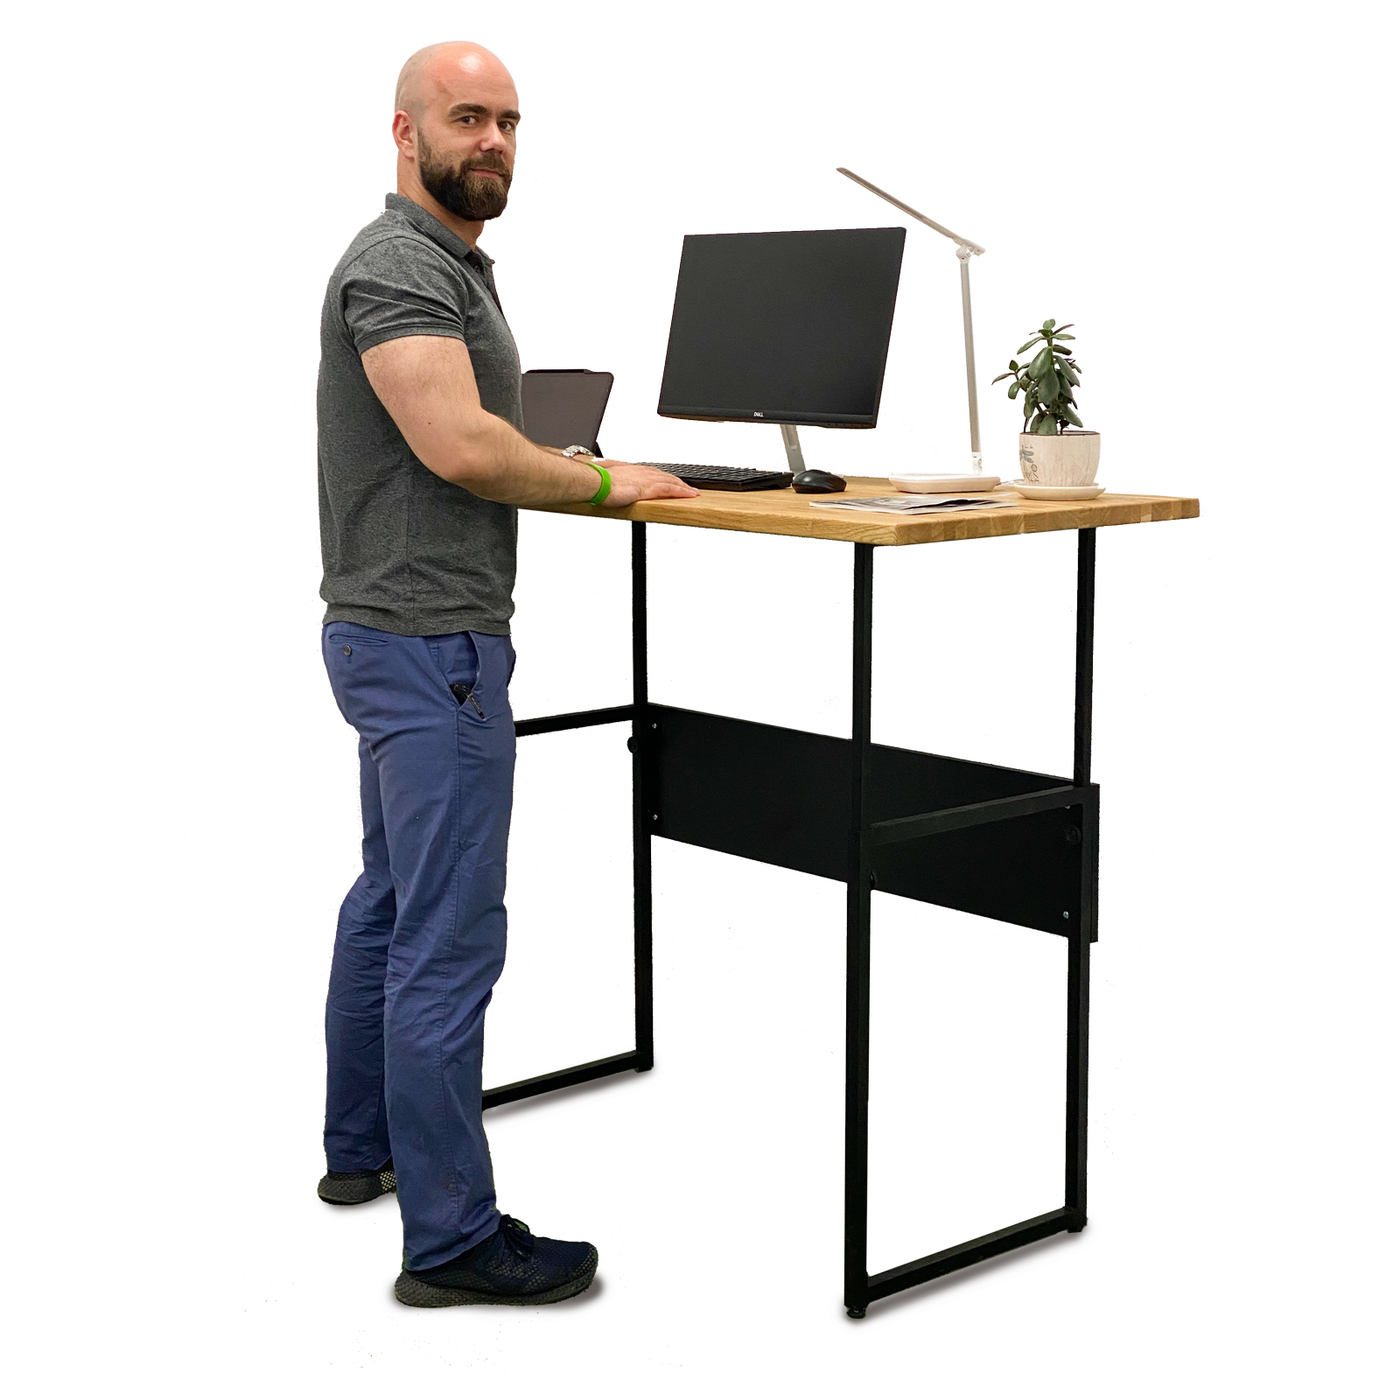 Height em. Высокий стол с механической регулировкой высоты ems120. Компьютерный стол для работы стоя. Высокие столы стоя. Высокий стол для работы стоя.